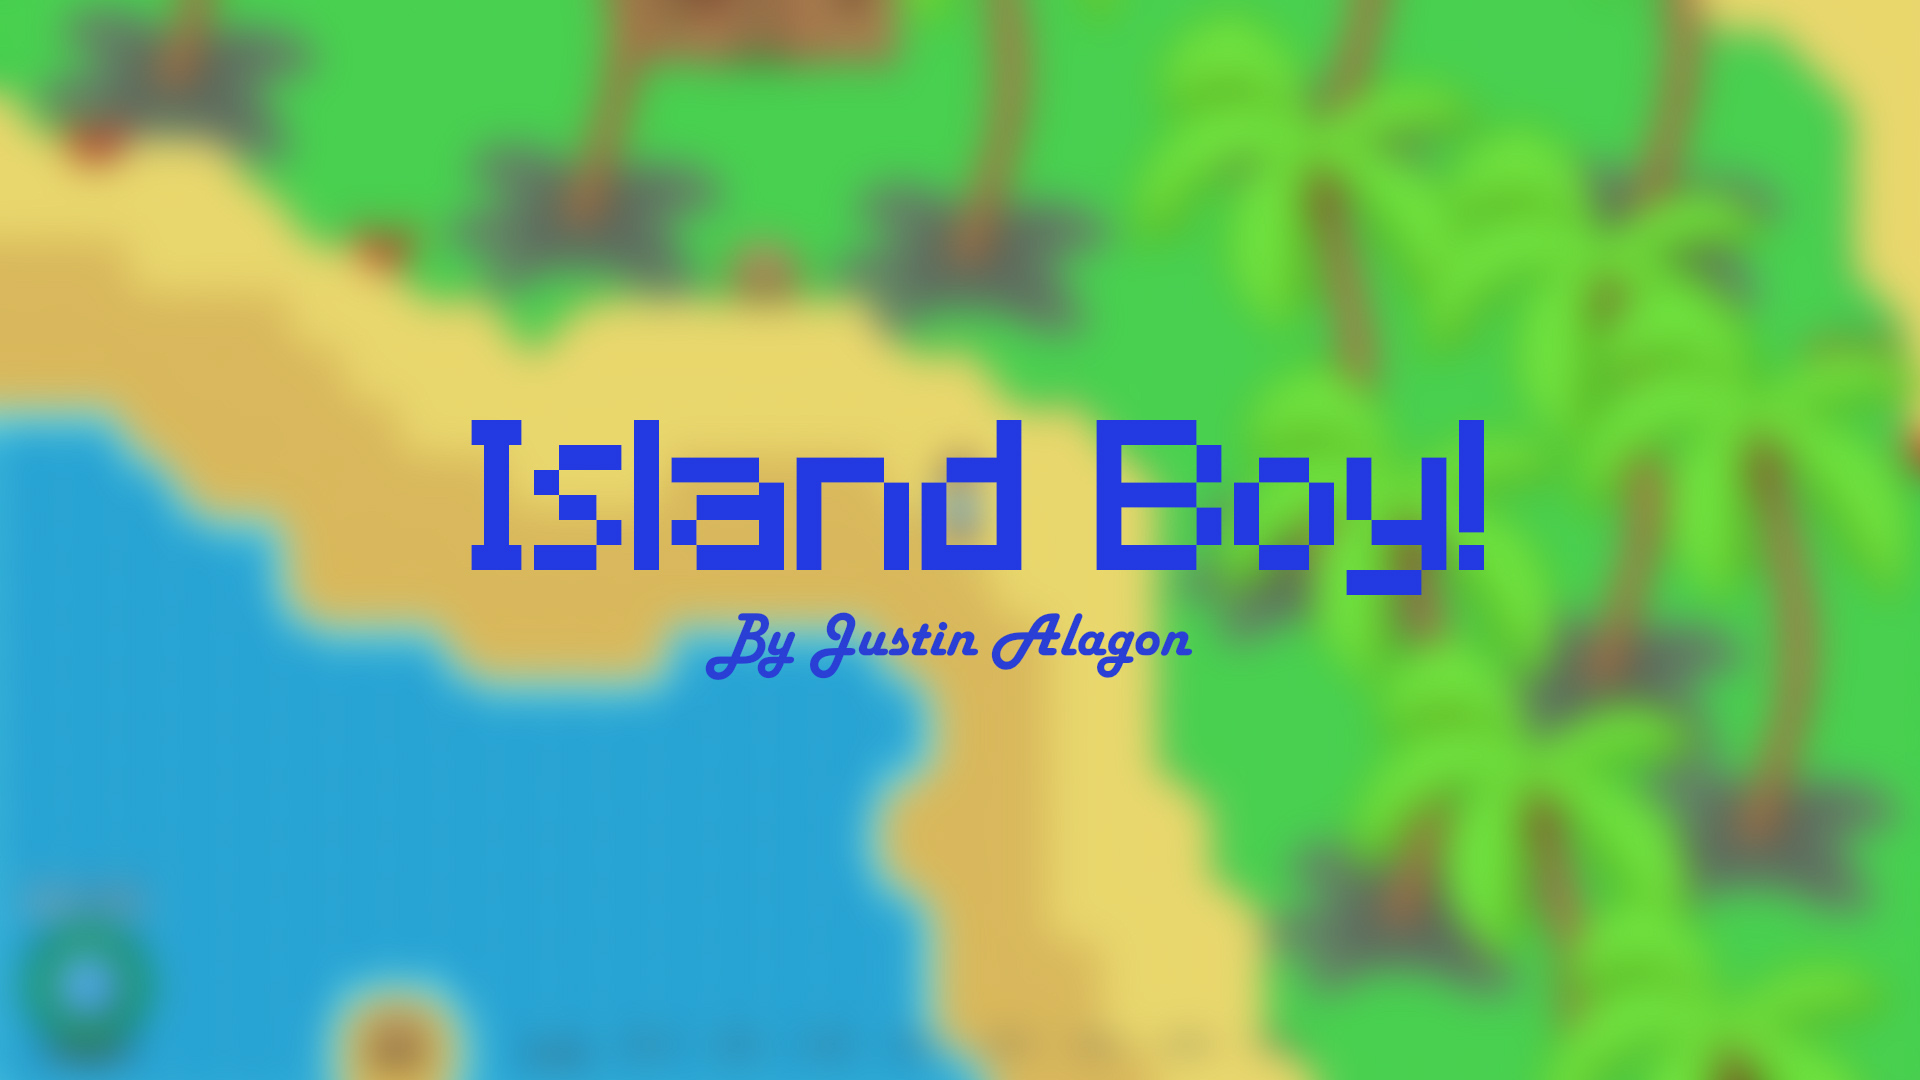 Island Boy!